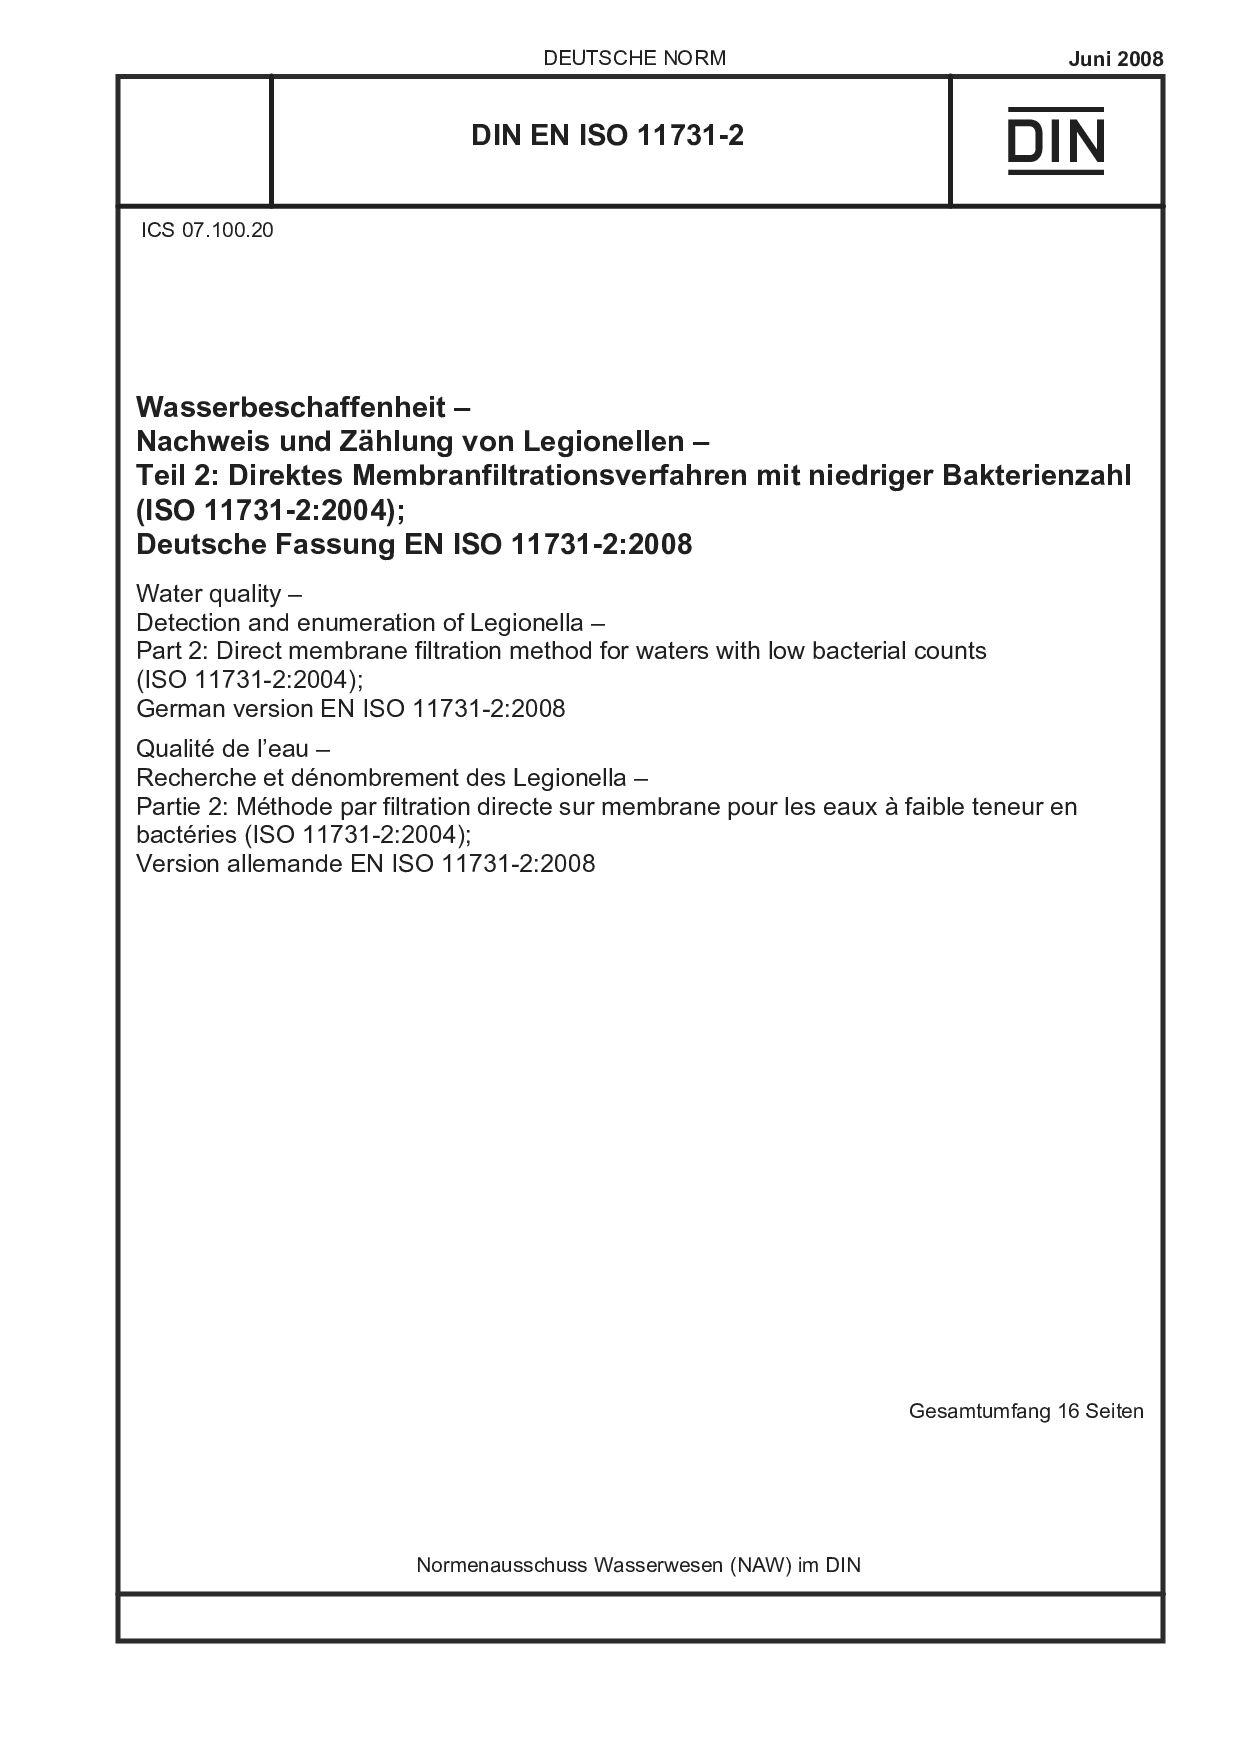 DIN EN ISO 11731-2:2008封面图